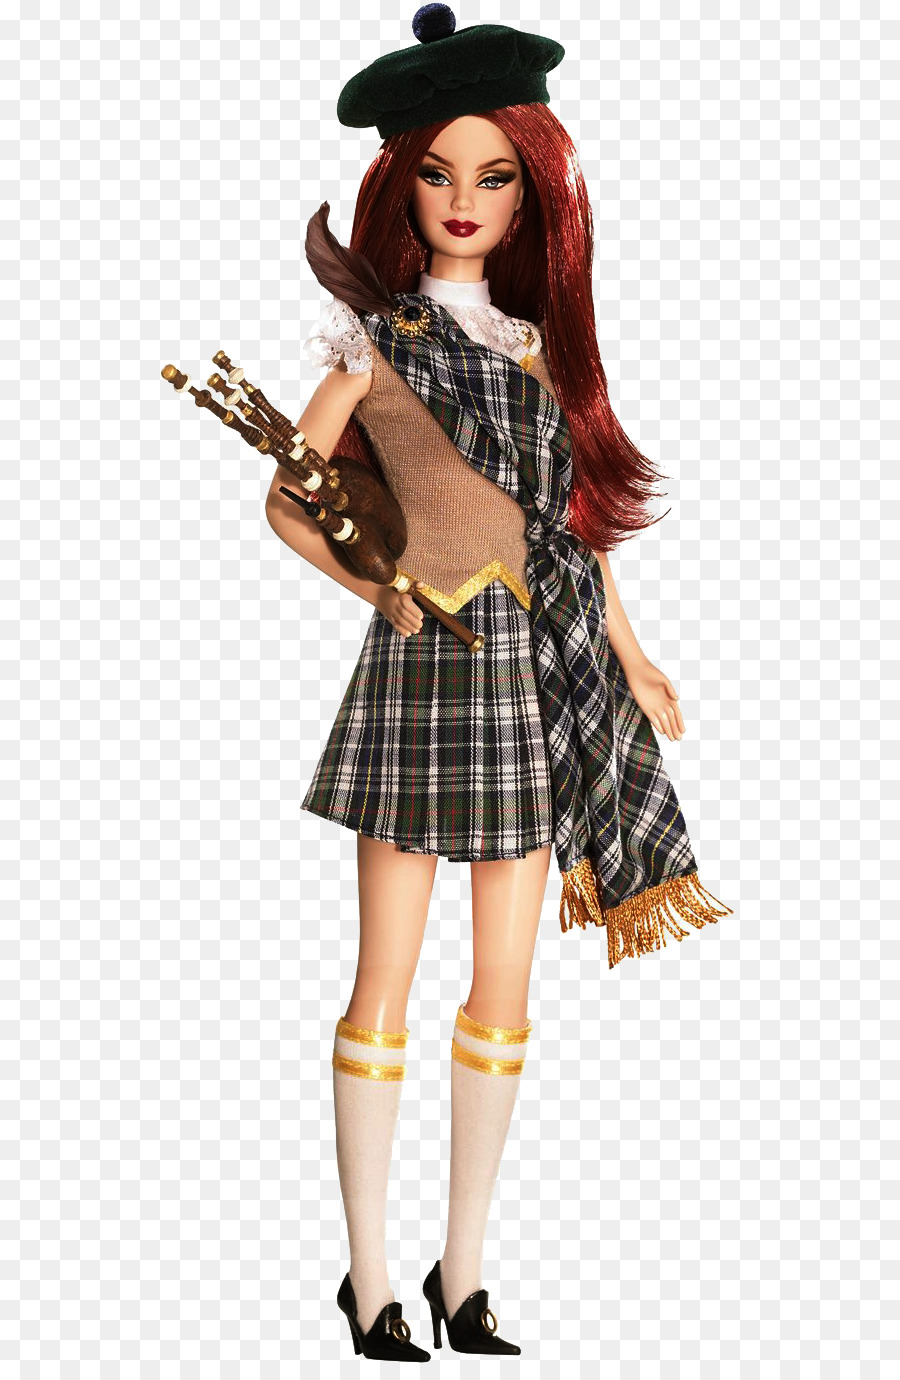 Scozia Bambola Barbie Spagna Bambola Barbie Principessa d'Irlanda Barbie Principessa del Sud Africa Barbie Maiko Bambola Barbie - bambola